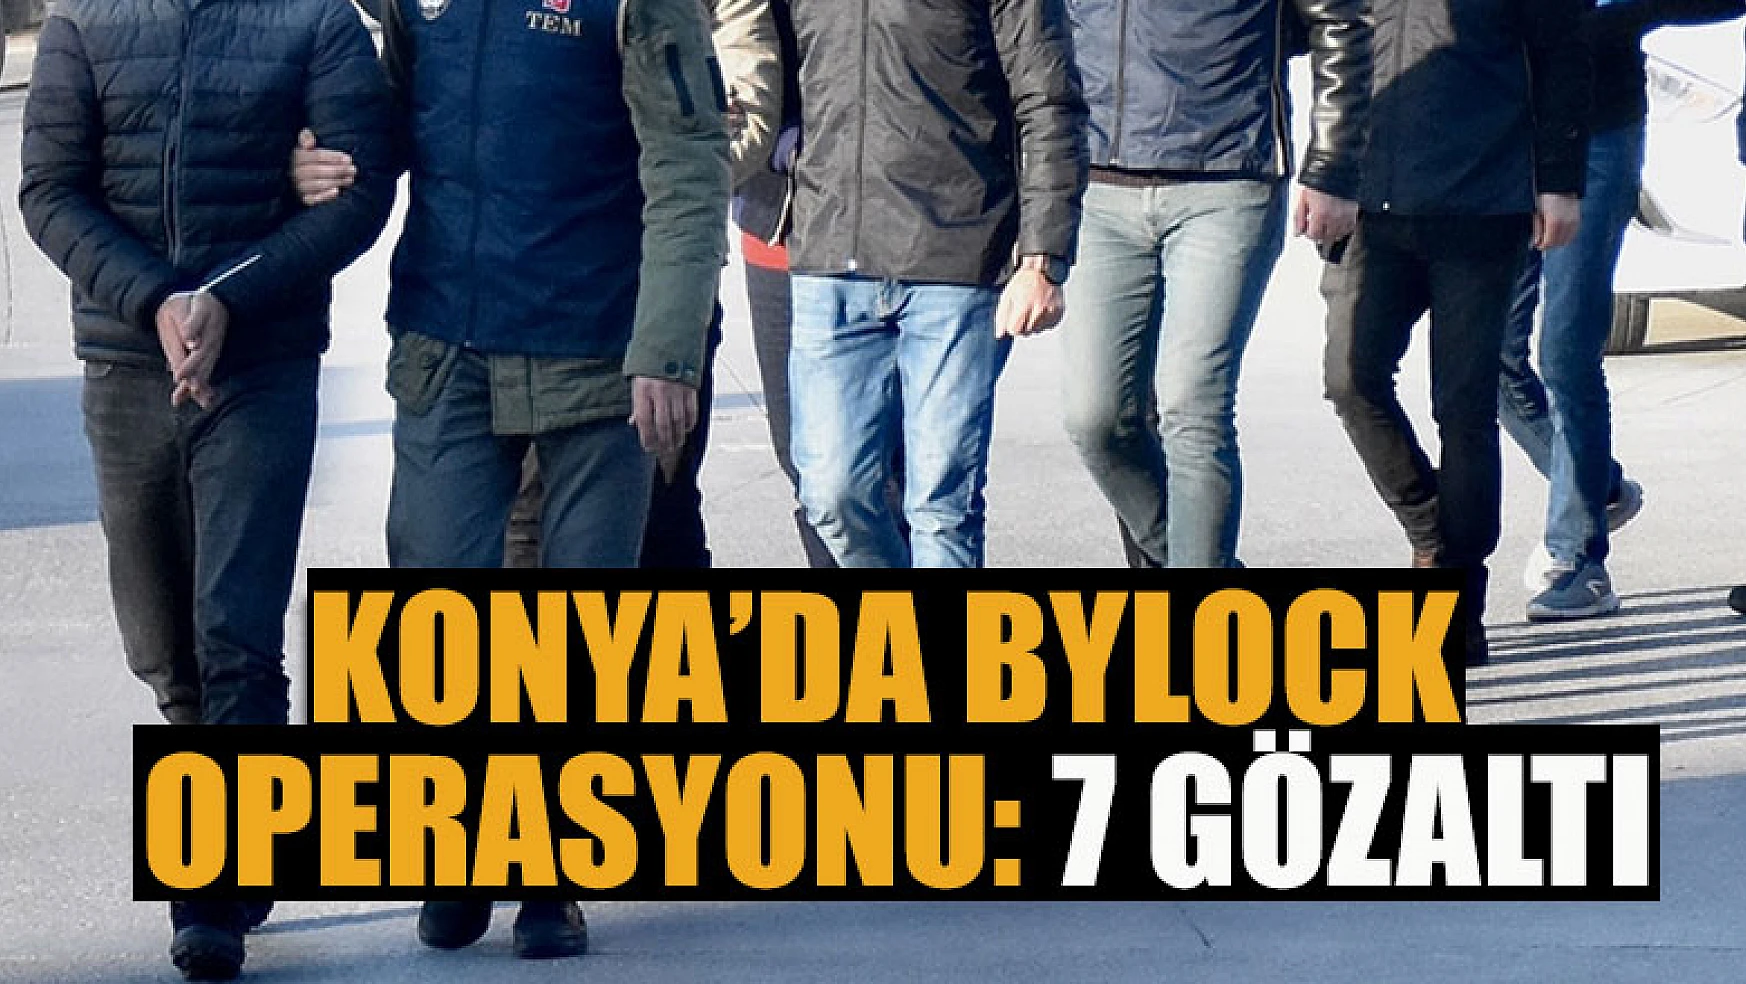 Konya'da Bylock operasyonu: 7 gözaltı